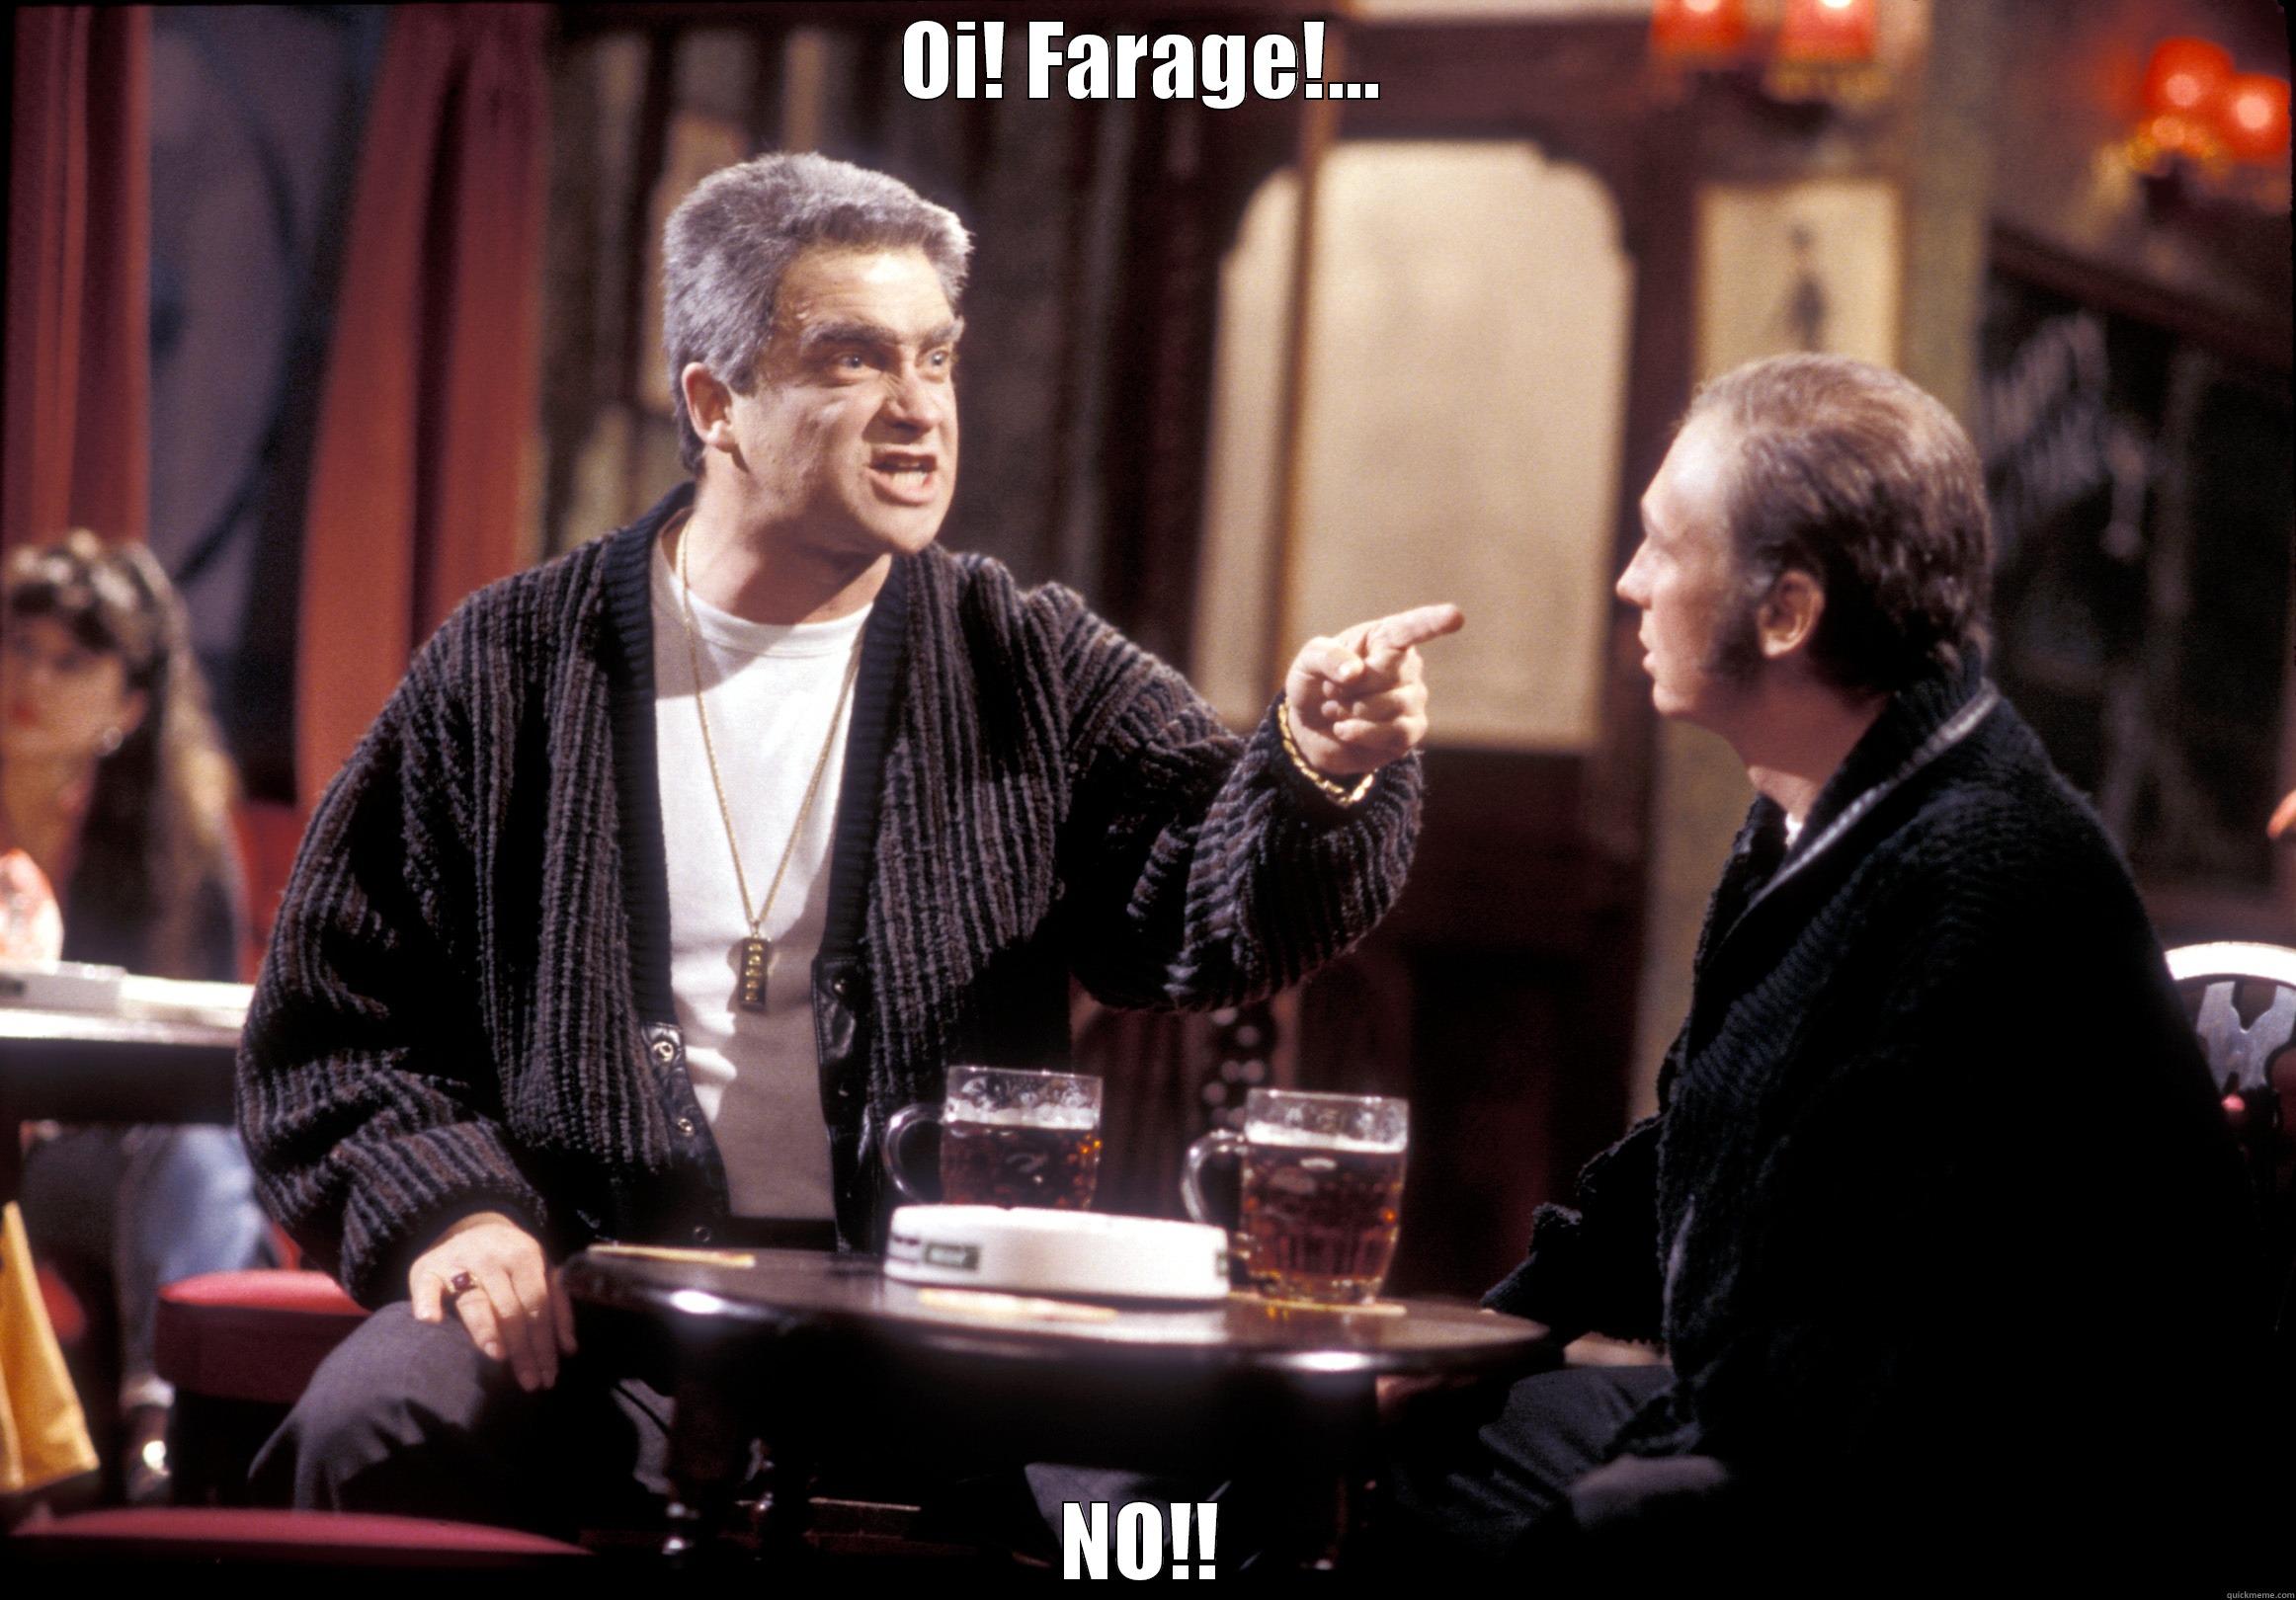 Oi, Farage...NO!!!! - OI! FARAGE!... NO!! Misc